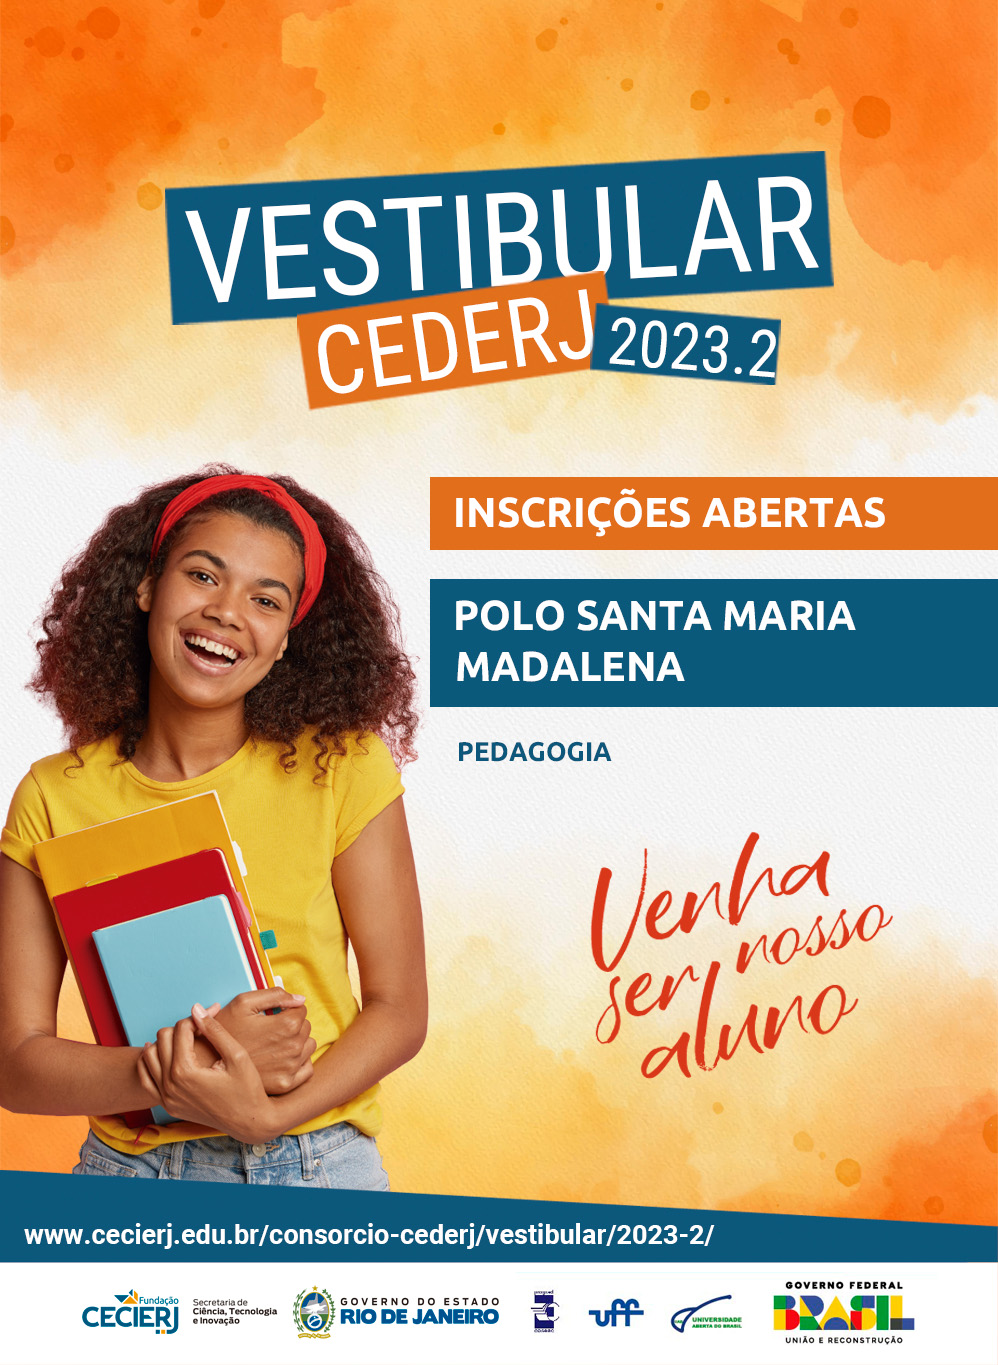 Vestibular Cederj 2023.2: Inscrições abertas até 7 de maio